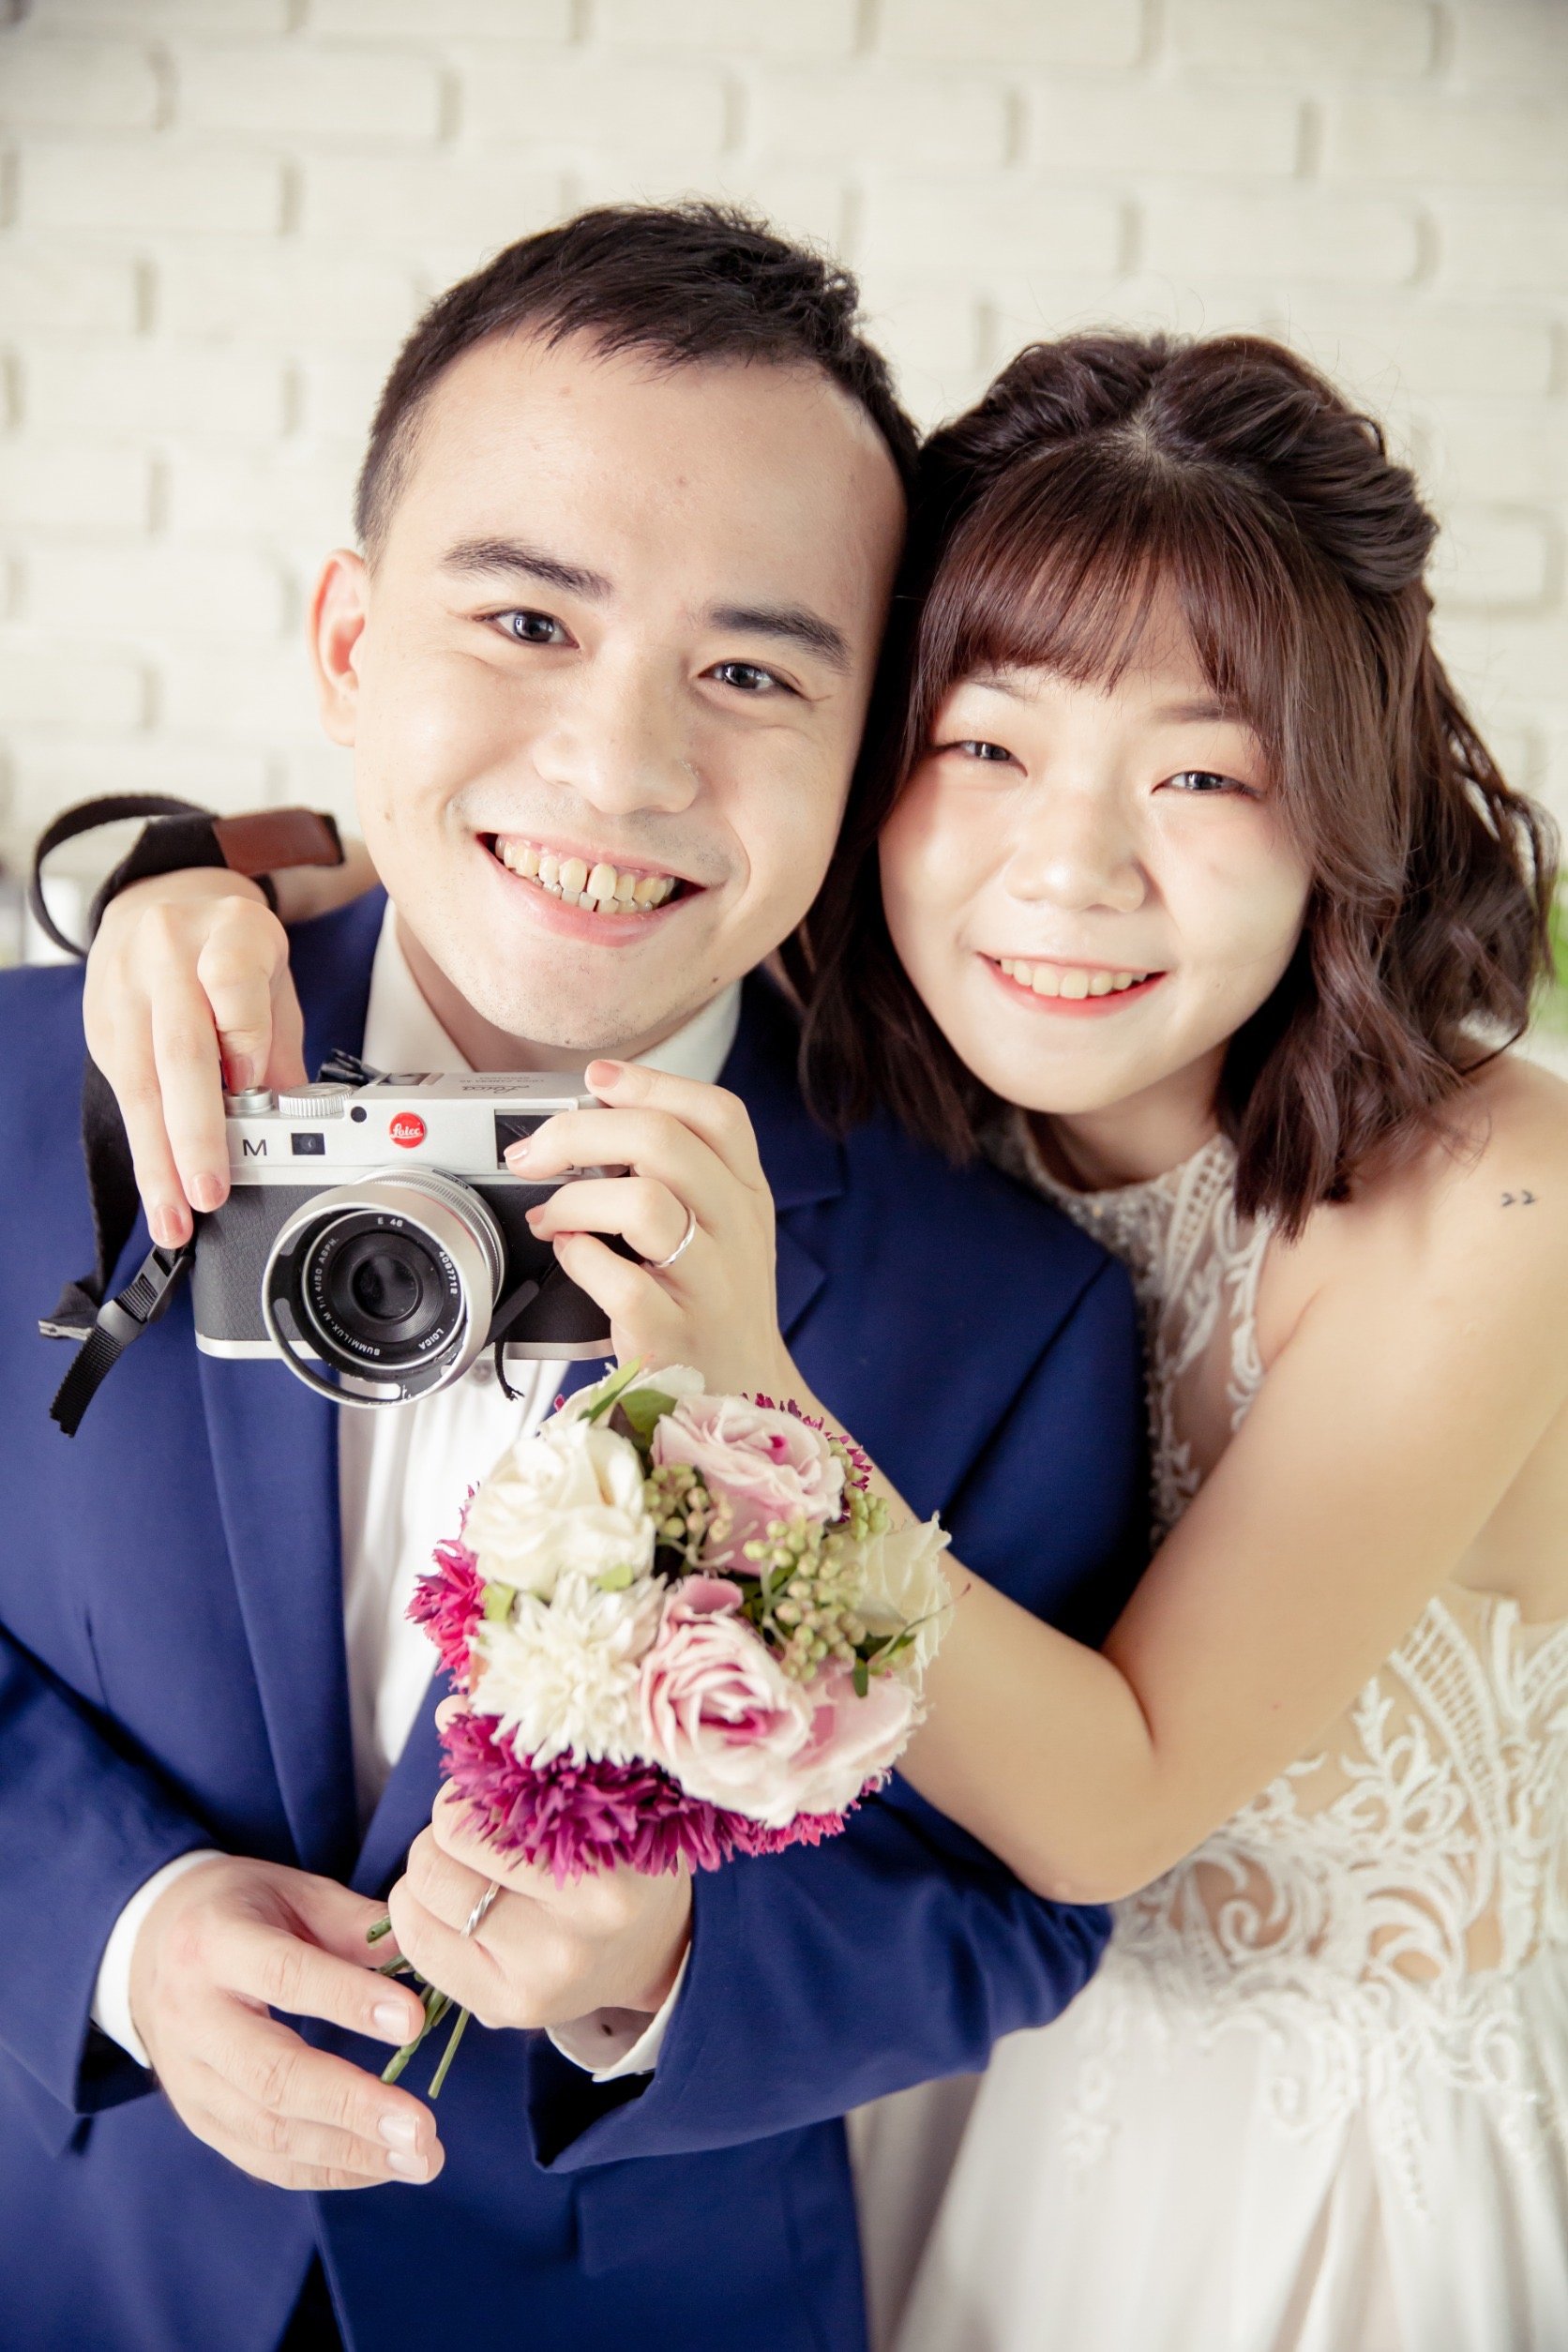 婚紗攝影可以找麗舍^_^-結婚經驗分享